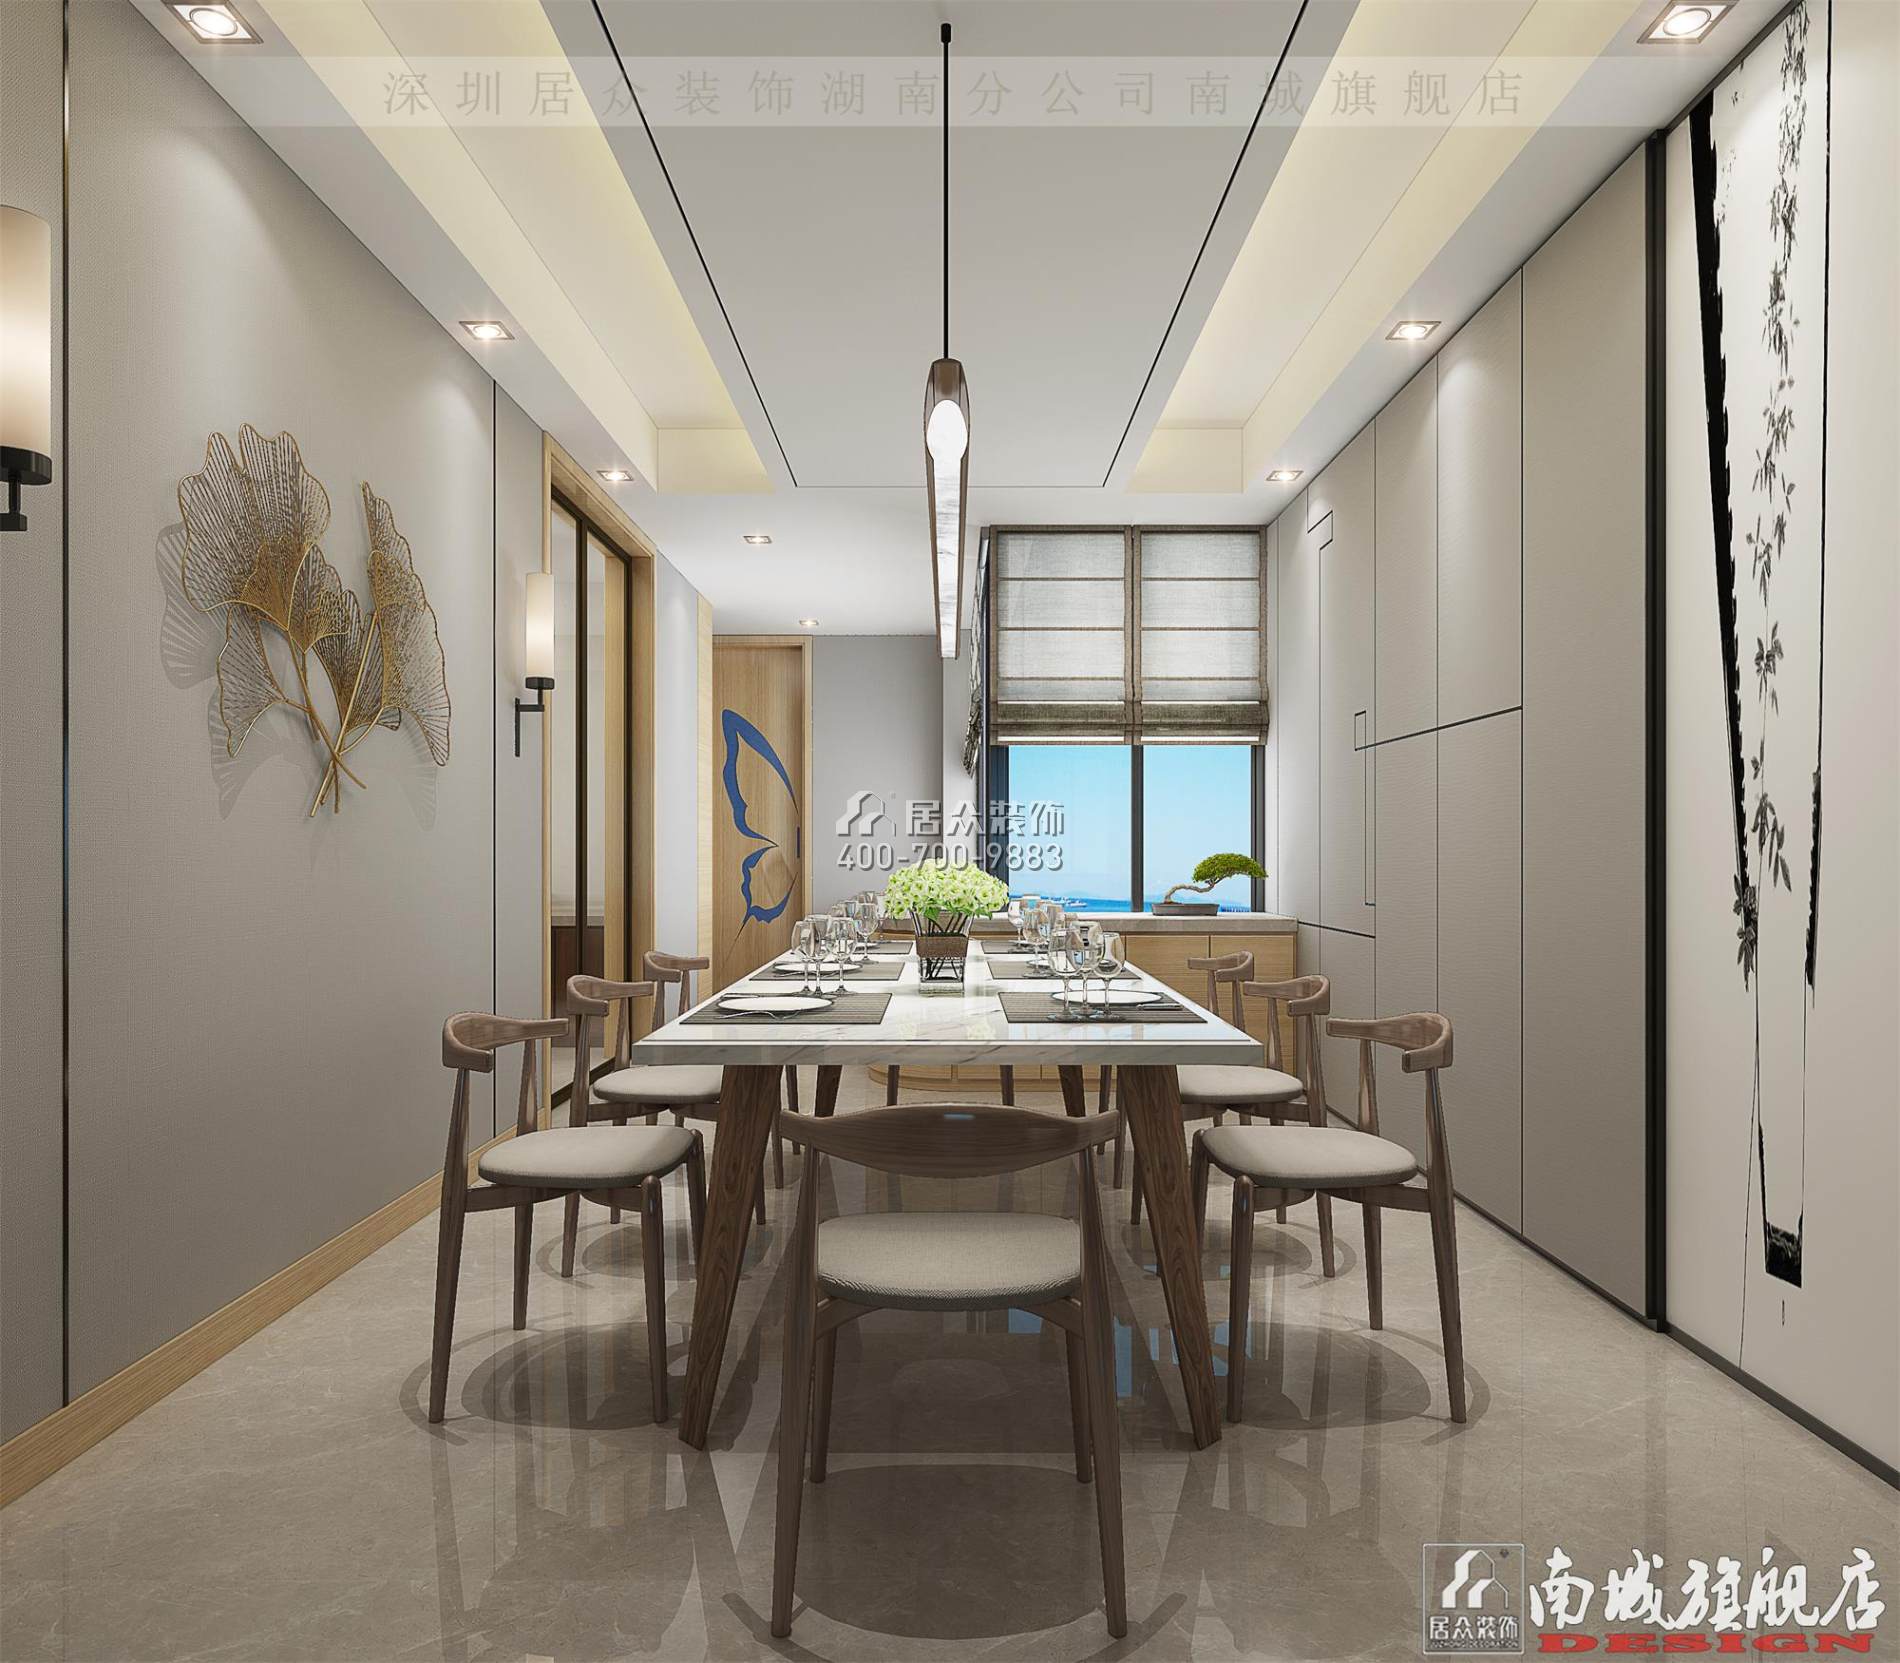 中建江山壹号232平方米中式风格平层户型餐厅装修效果图